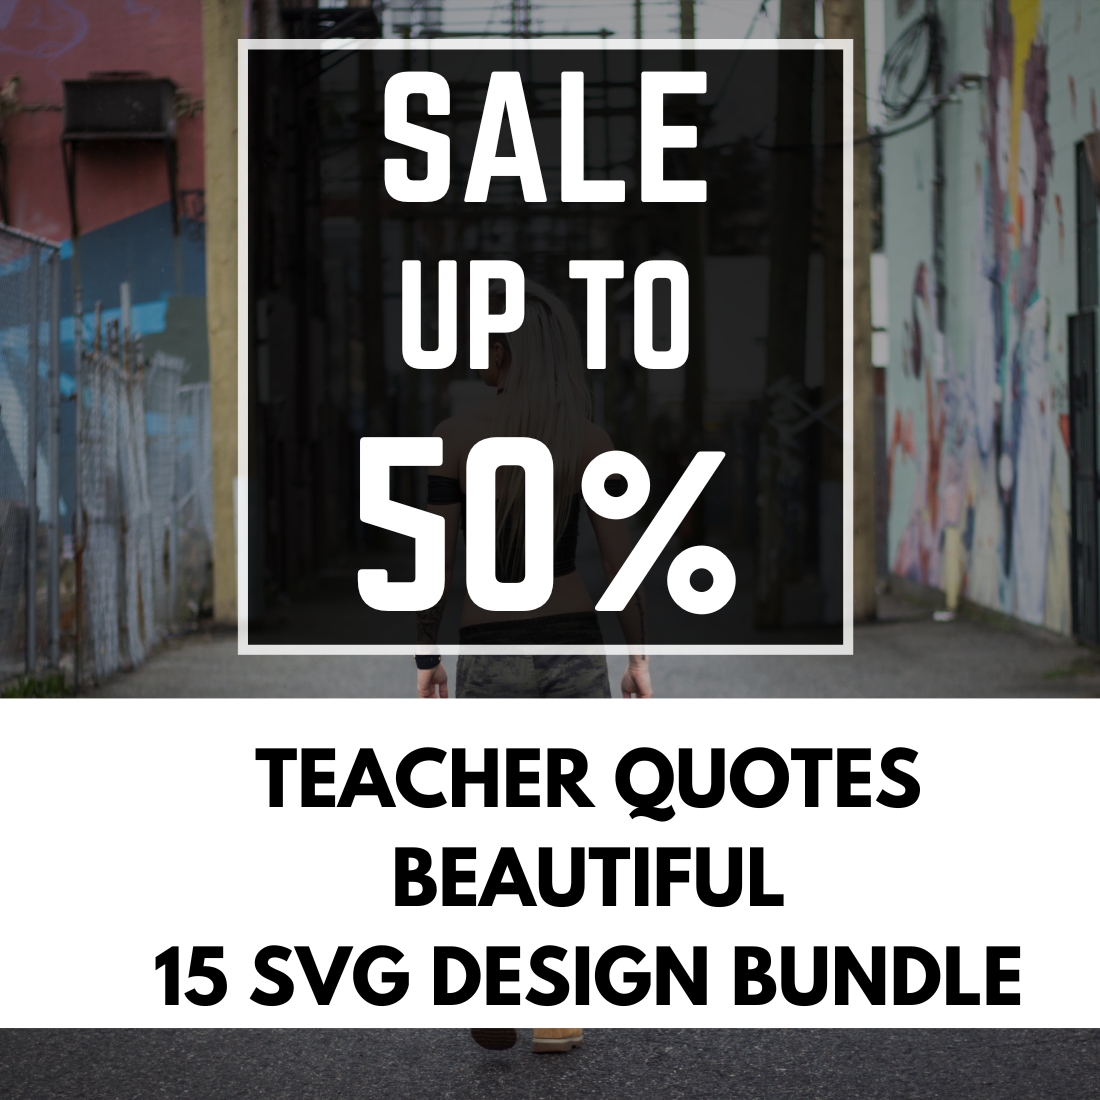 Teacher Quotes 15 SVG Design Bundle cover image.